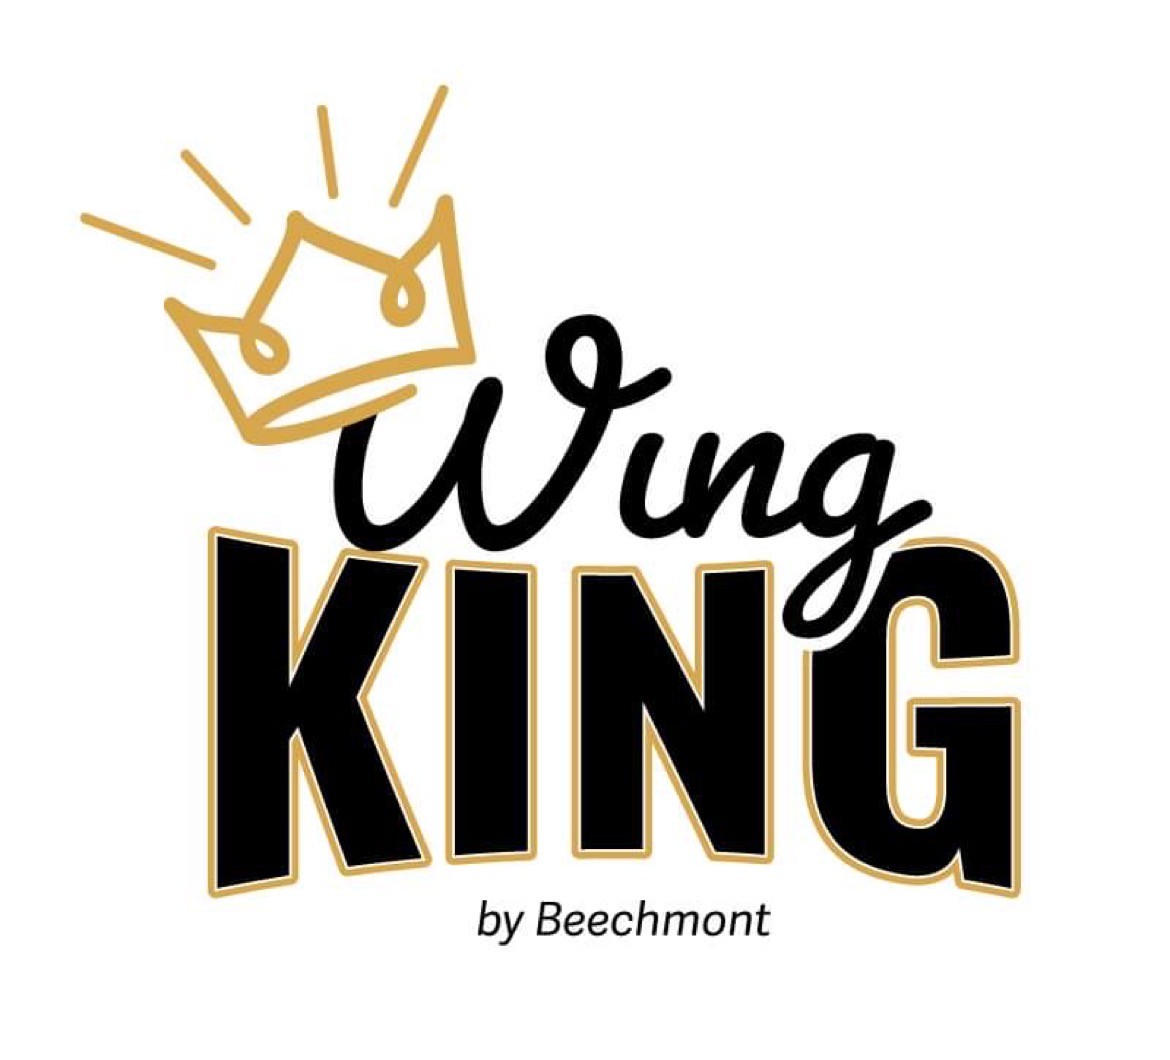 Wing King 